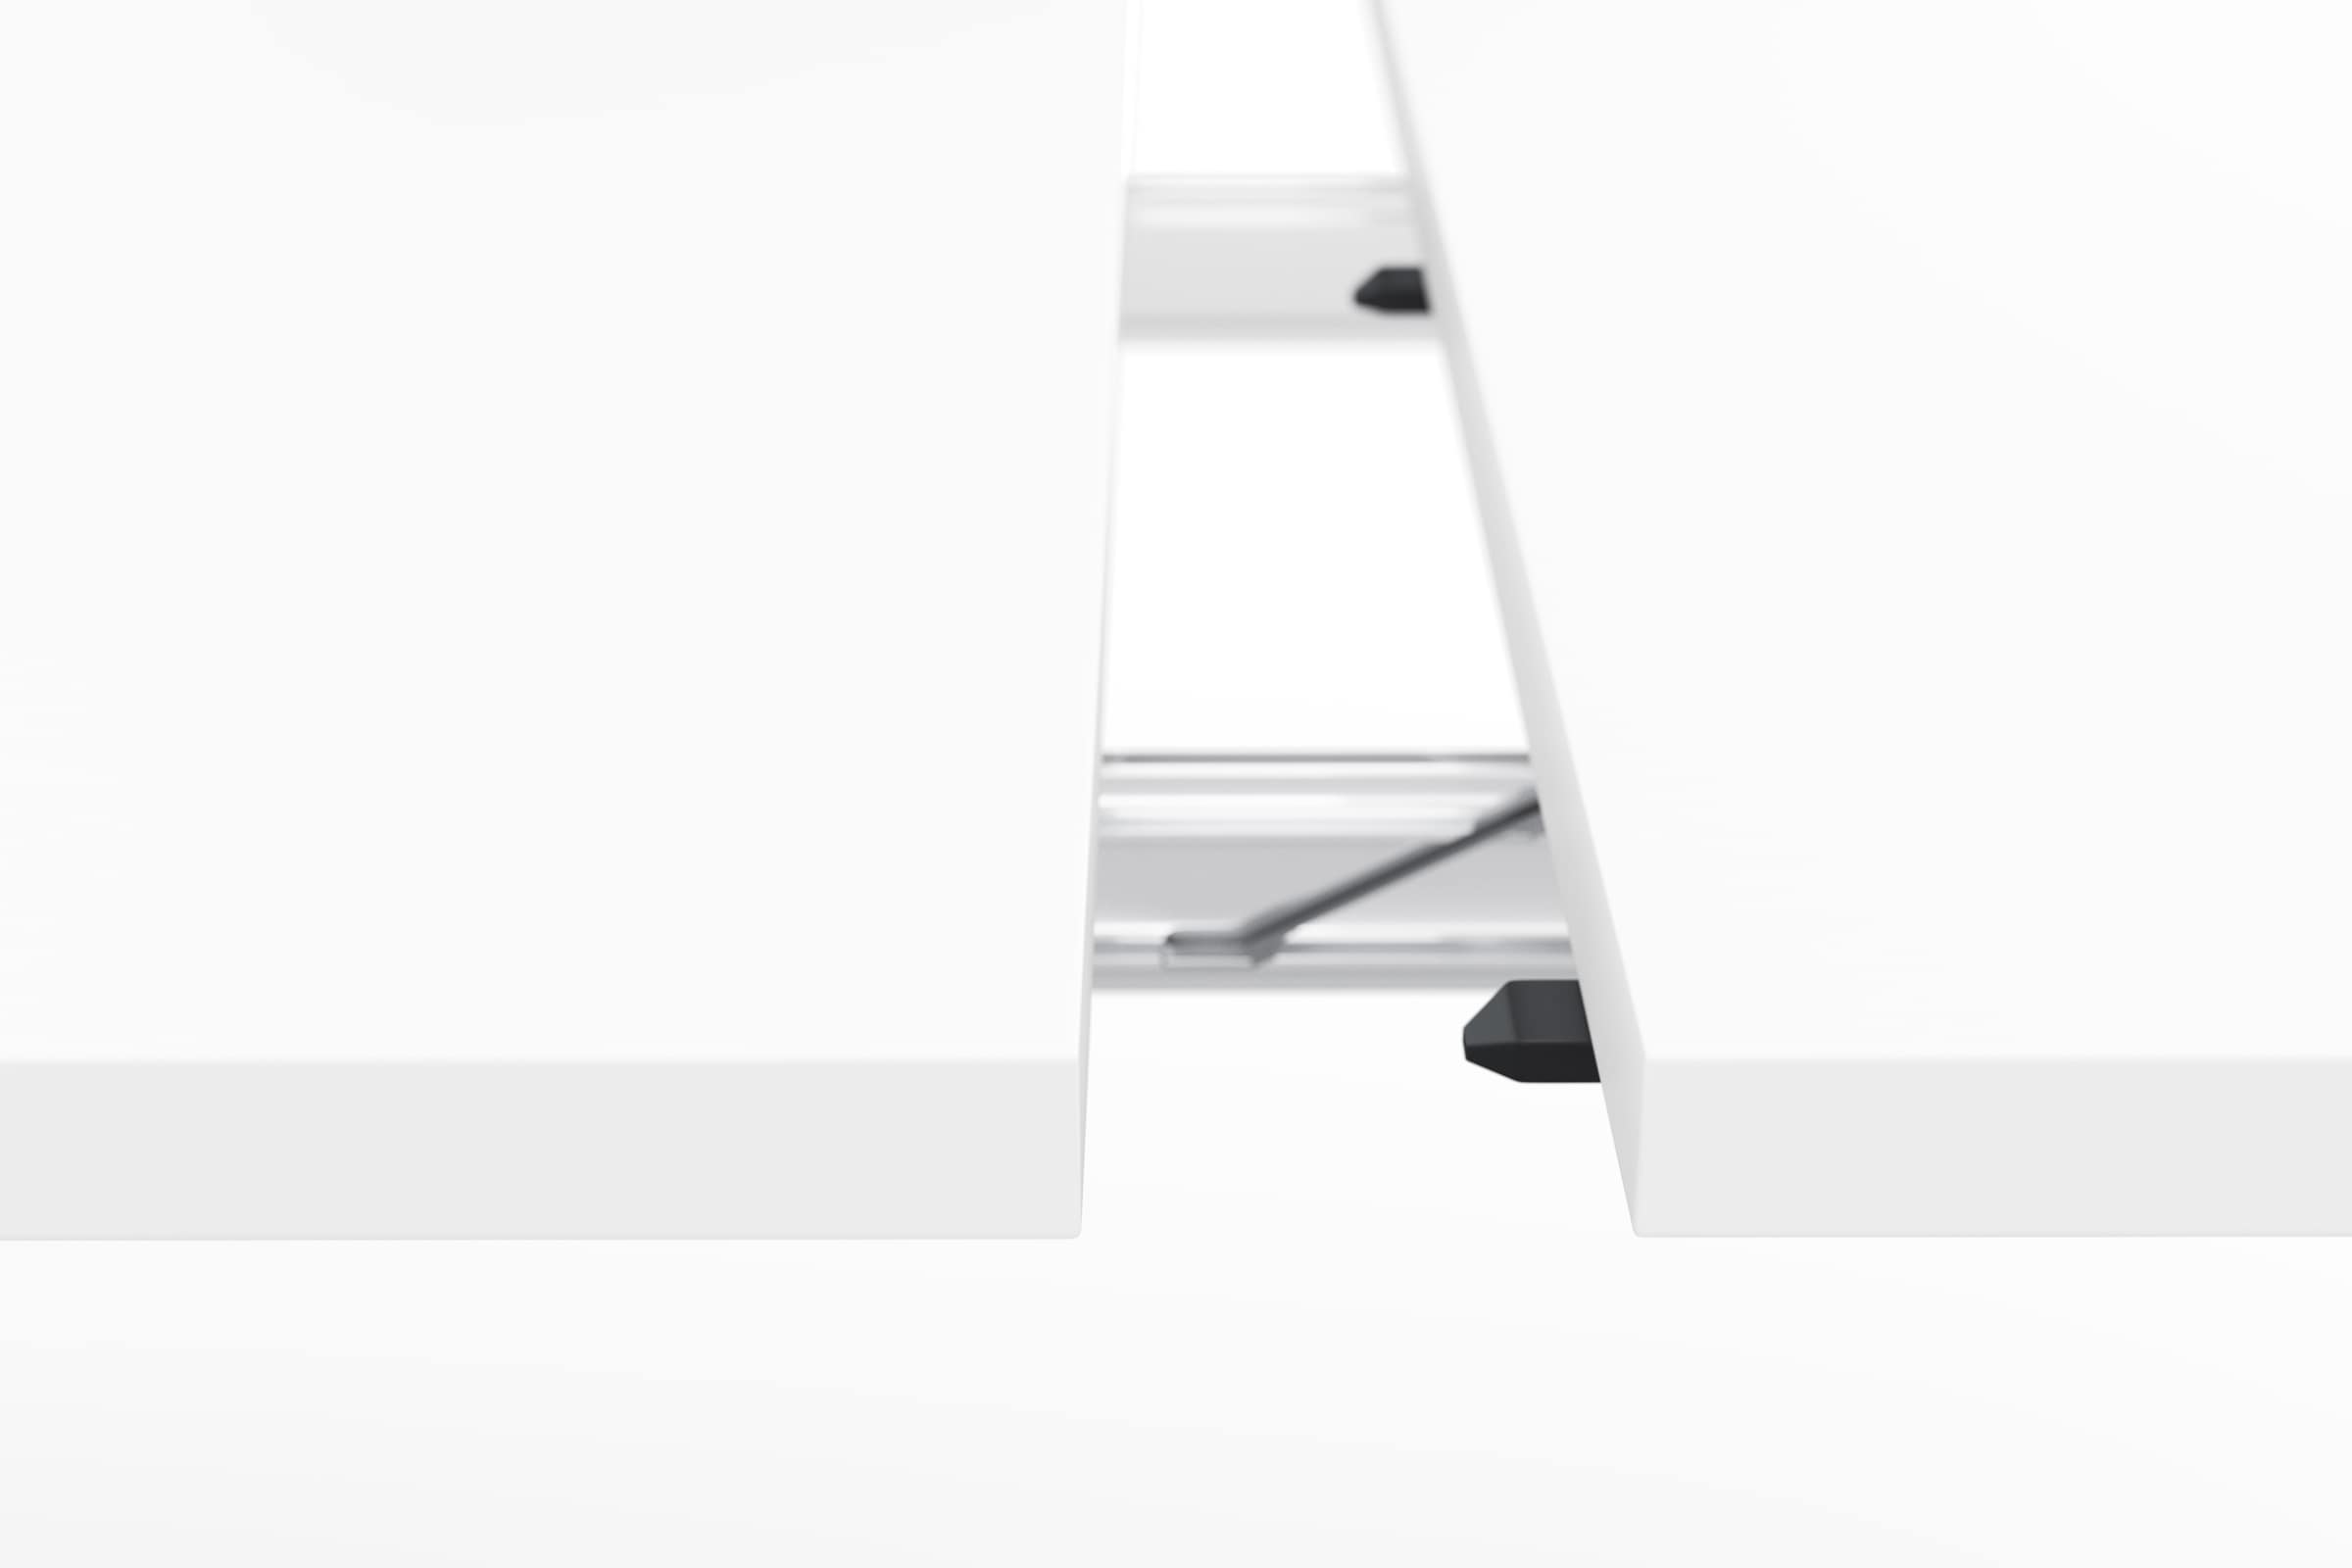 Mäusbacher Esstisch »Komfort C«, mit X-Gestell in asteichefarben und mit  Auszug, Breite 160-260 cm auf Raten kaufen | Ansteckplatten